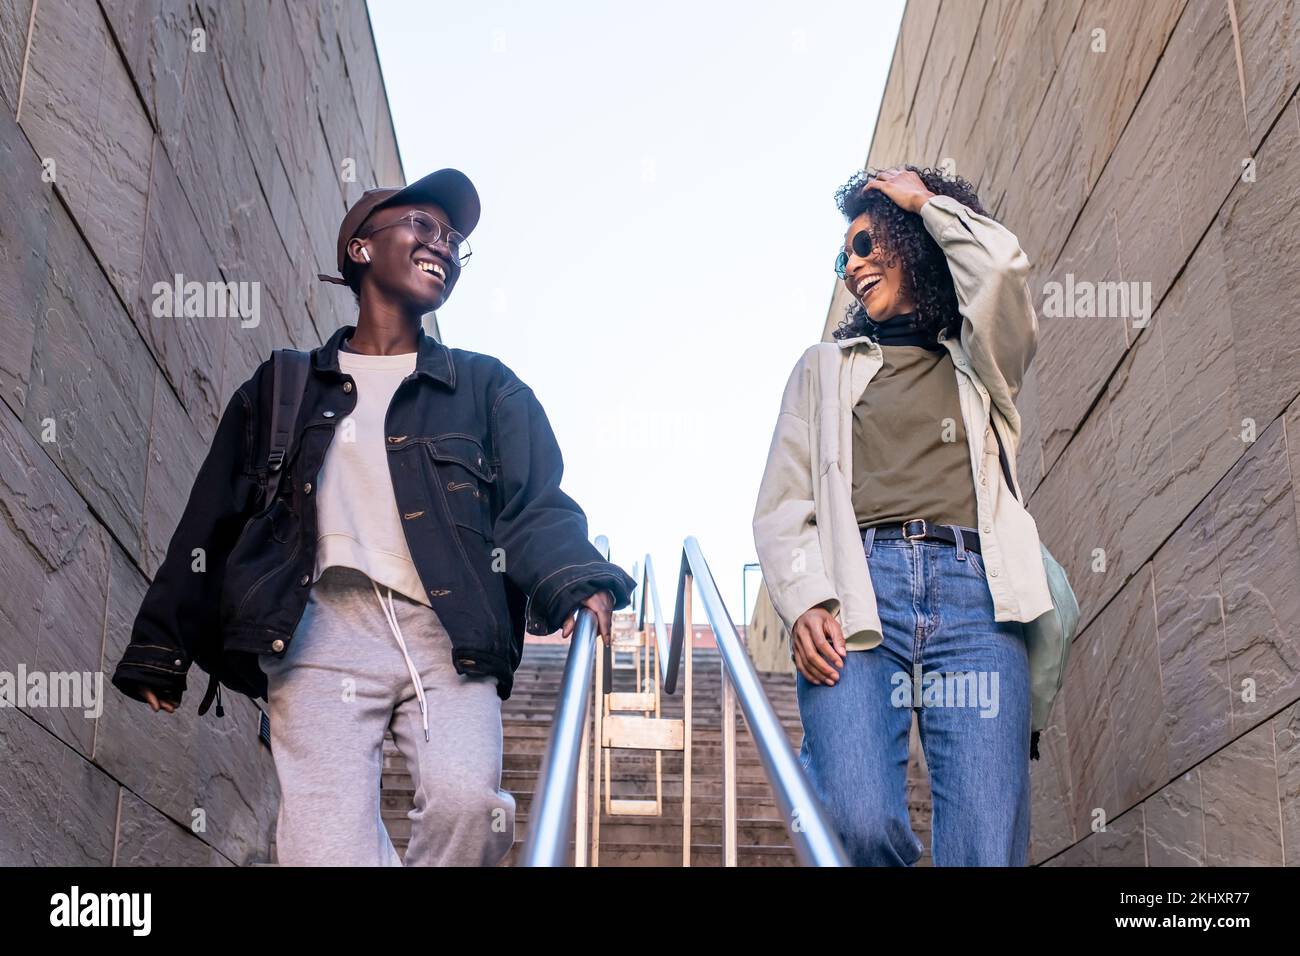 Zwei junge afroamerikanische Frauen, die in der Stadt spazieren gehen, weibliche beste Freunde, die sich unterhalten und lachen, Mode-Strett-Style-Leute, Generation z-Mädchen Stockfoto